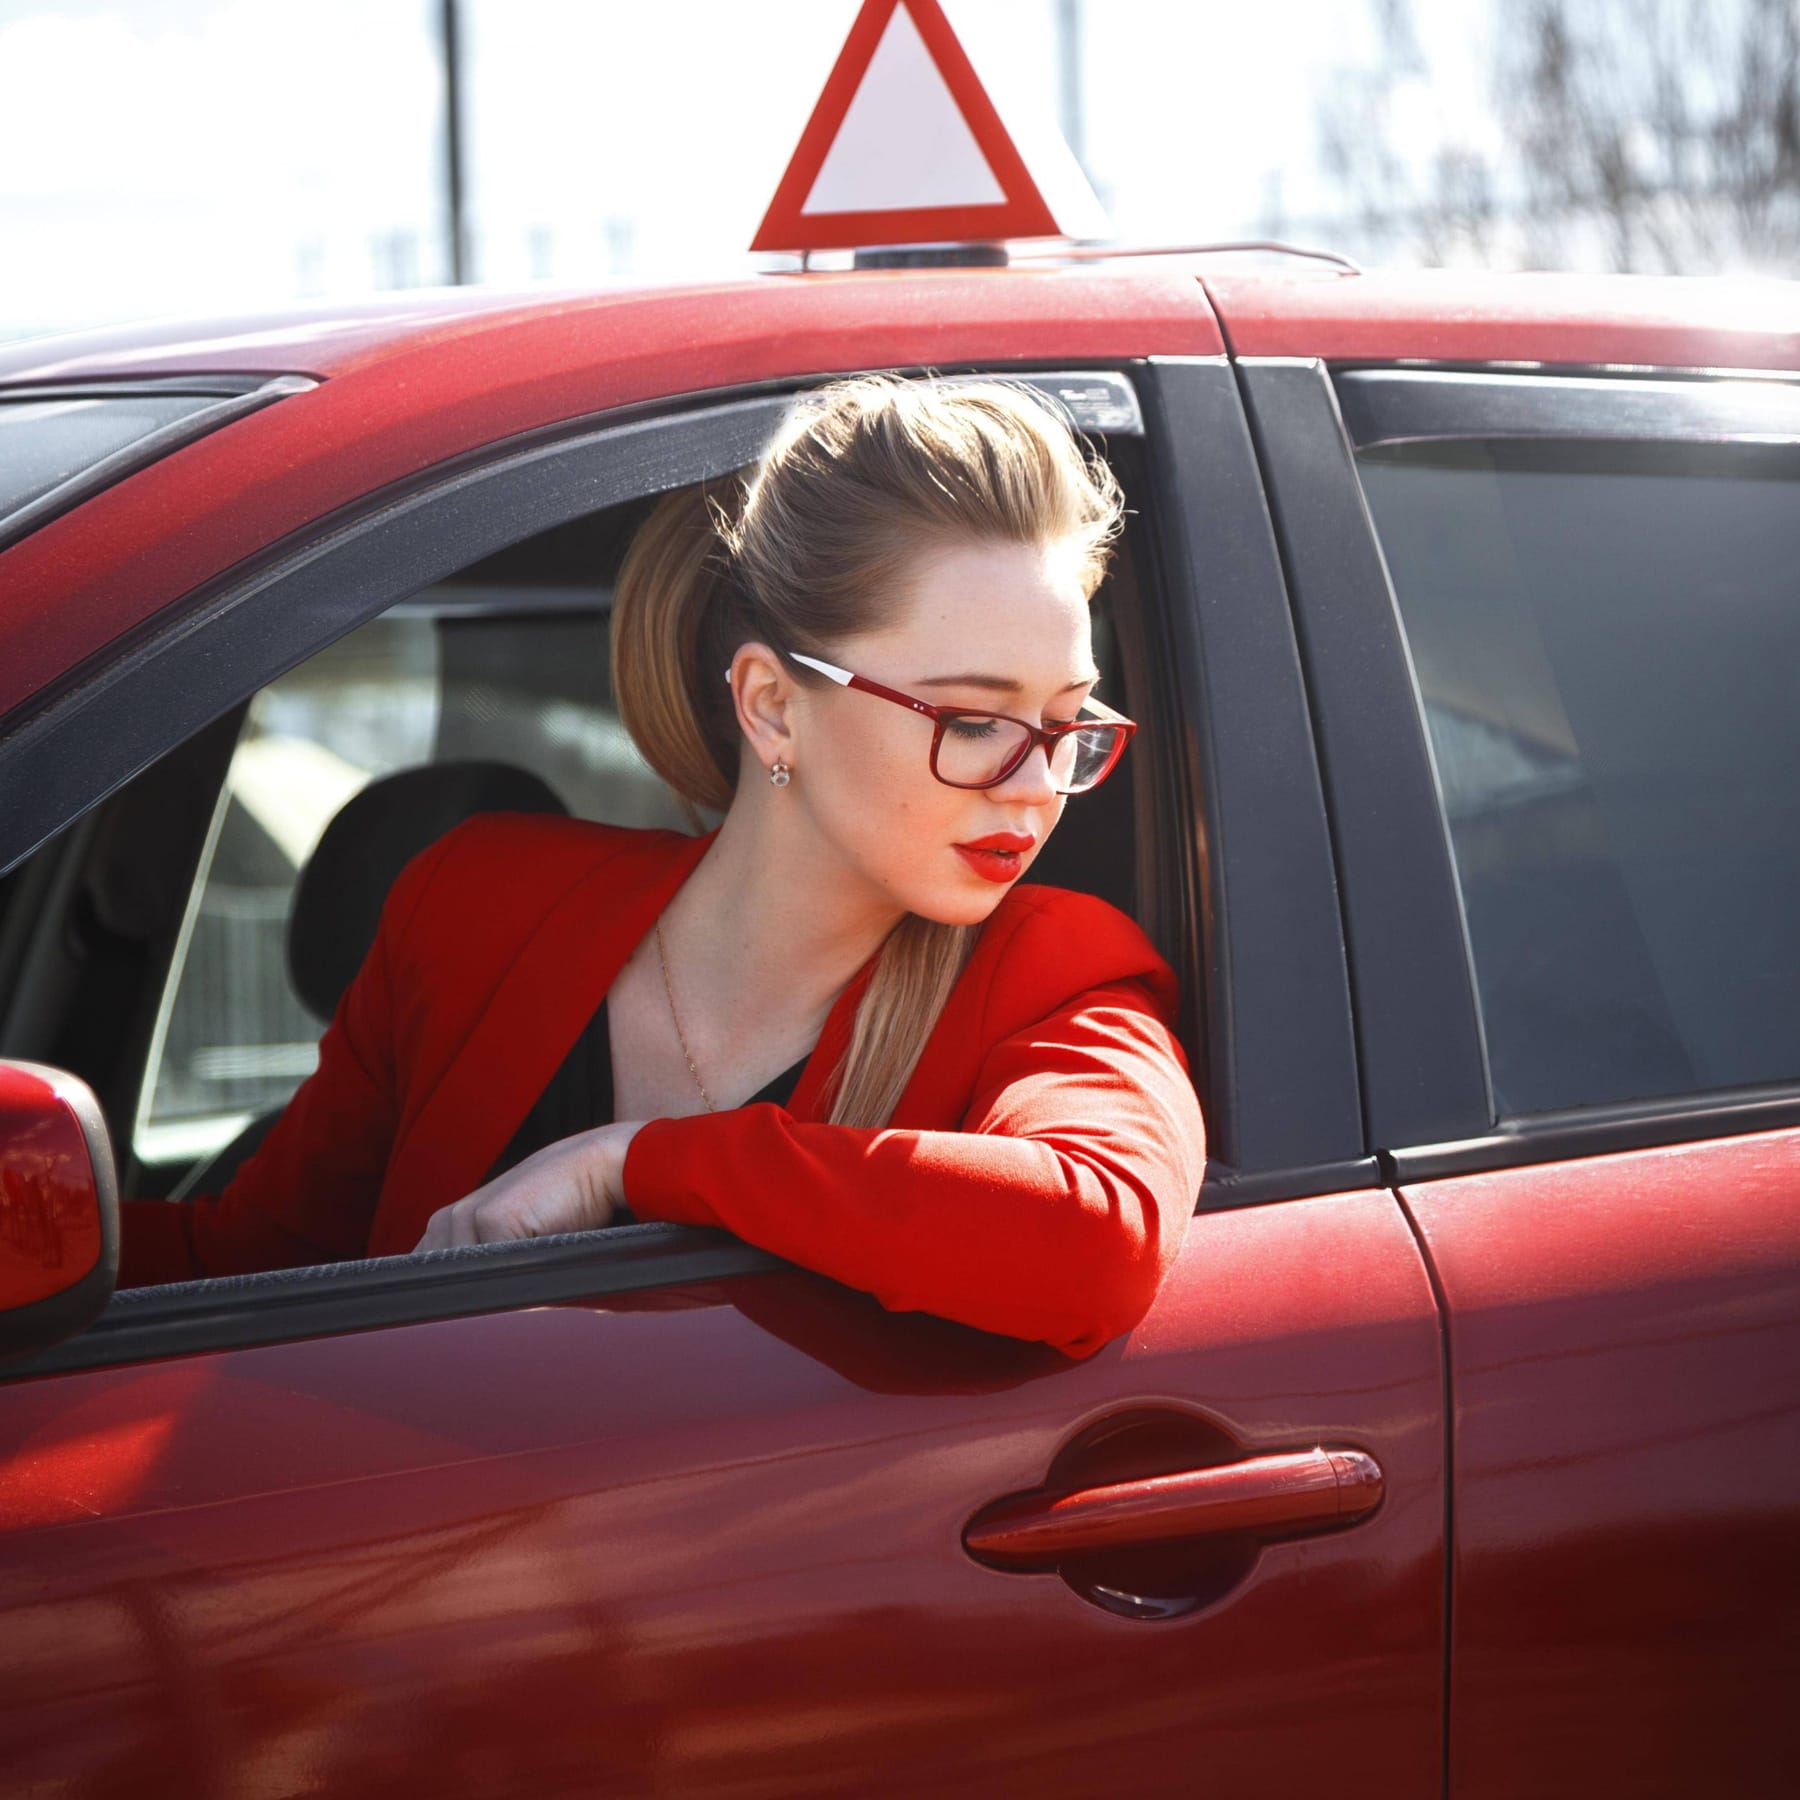 Frauen im Auto: Fahren sie wirklich schlechter als Männer?